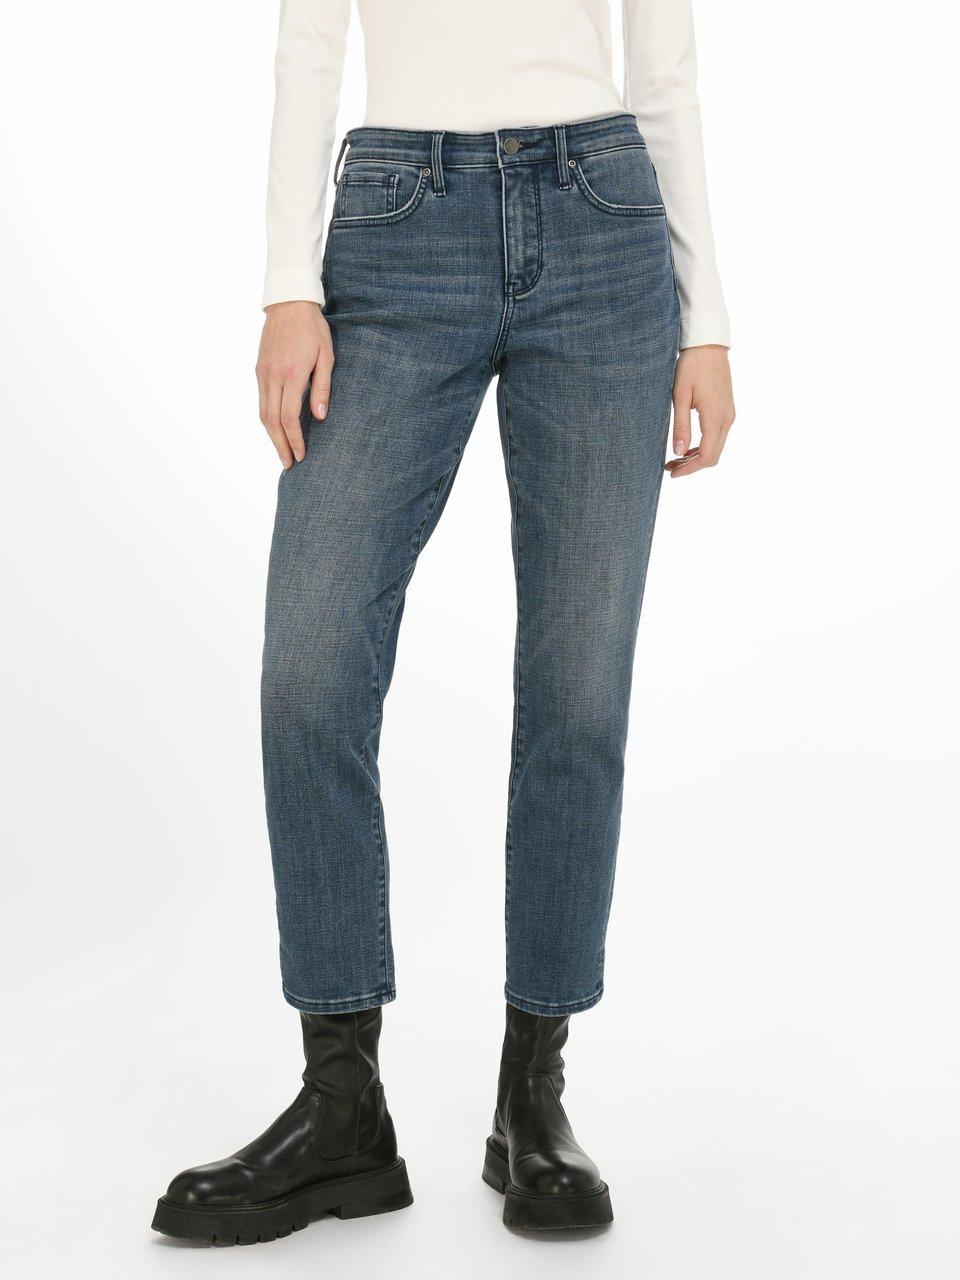 NYDJ - Jeans Modell Margot Girlfriend